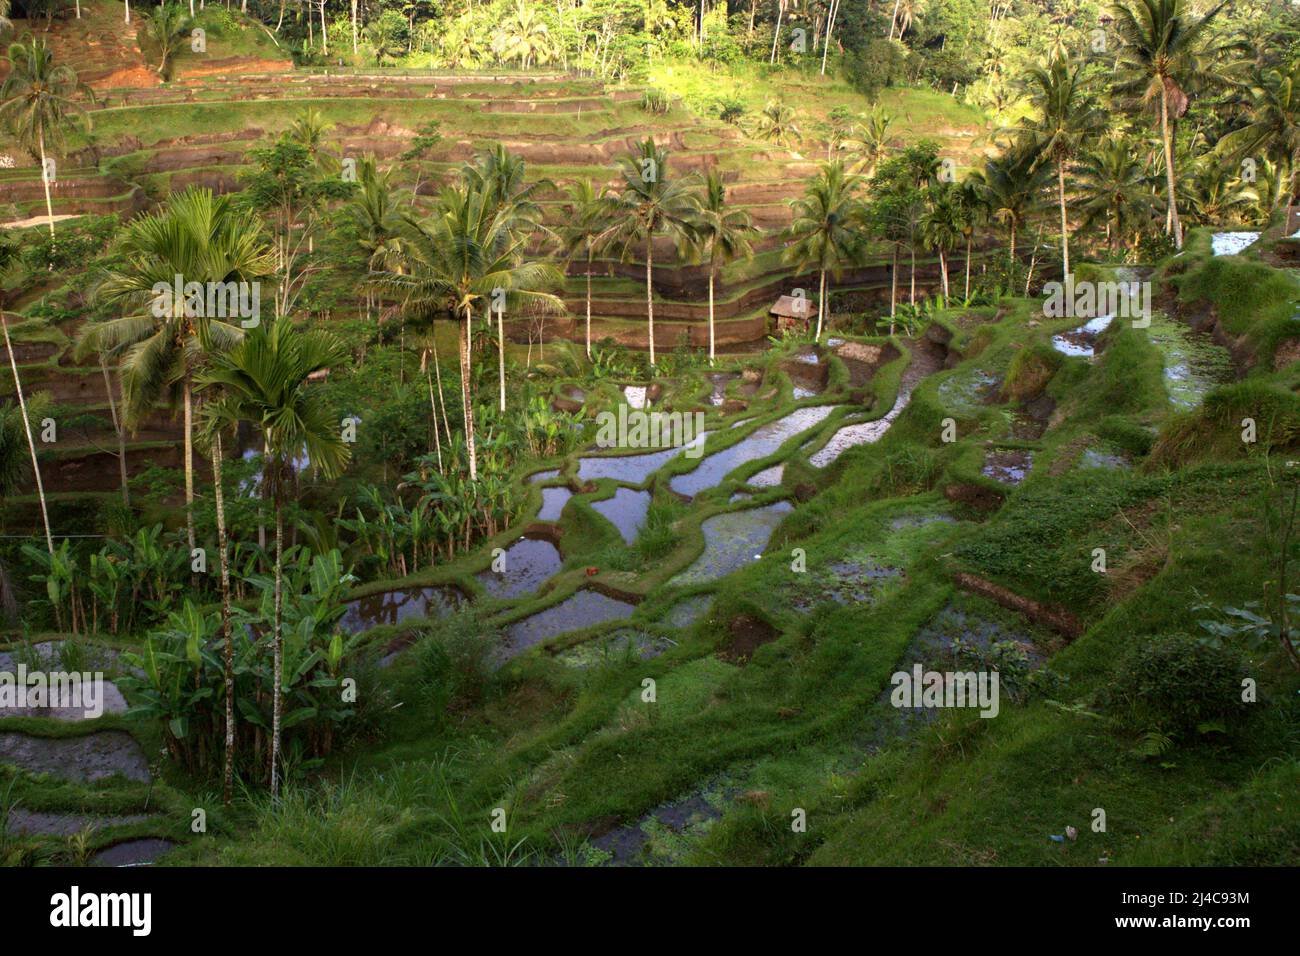 Terrazze di riso innaffate dal tradizionale sistema di gestione spirituale dell'acqua (irrigazione) a Tegallalang, Gianyar, Bali, Indonesia. Foto Stock